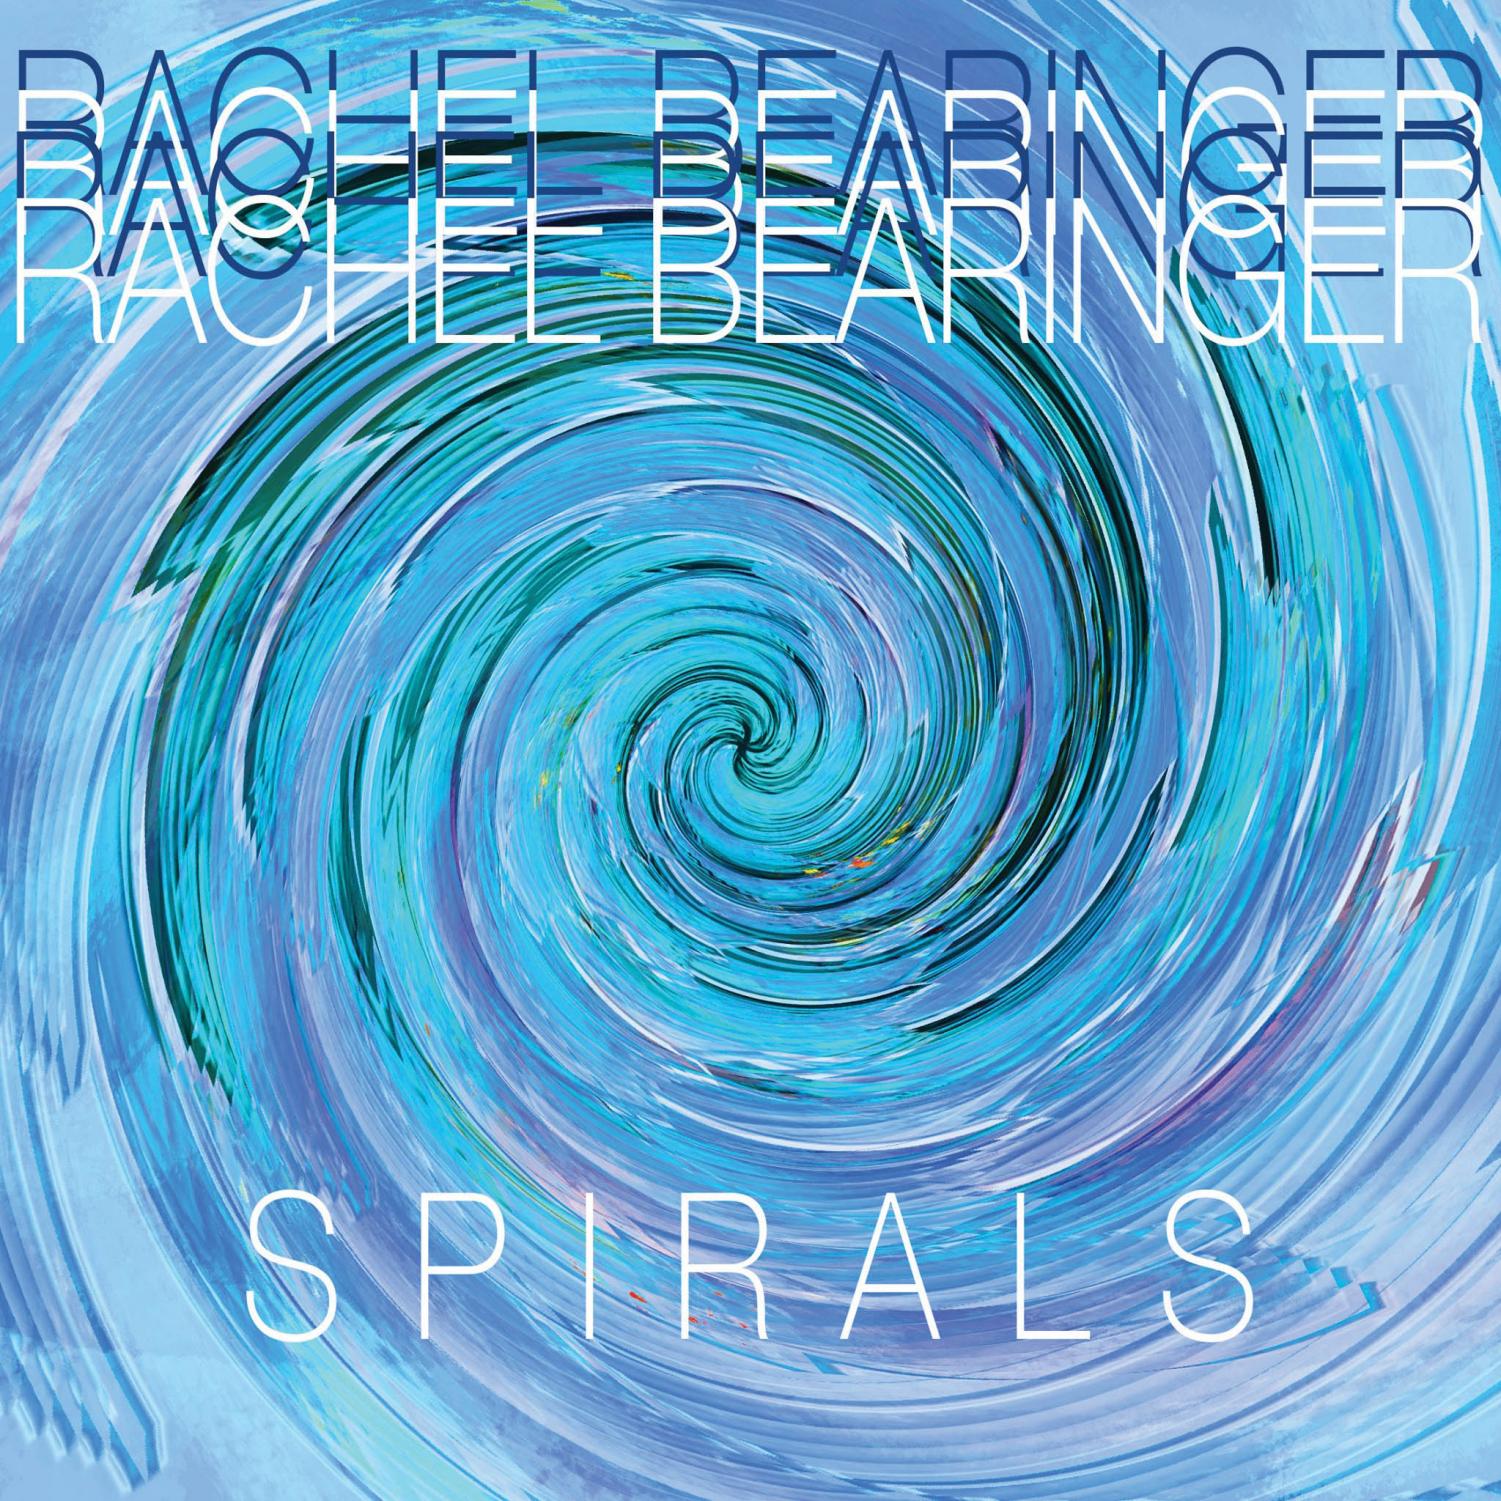 Rachel+Bearinger+drops+debut+album